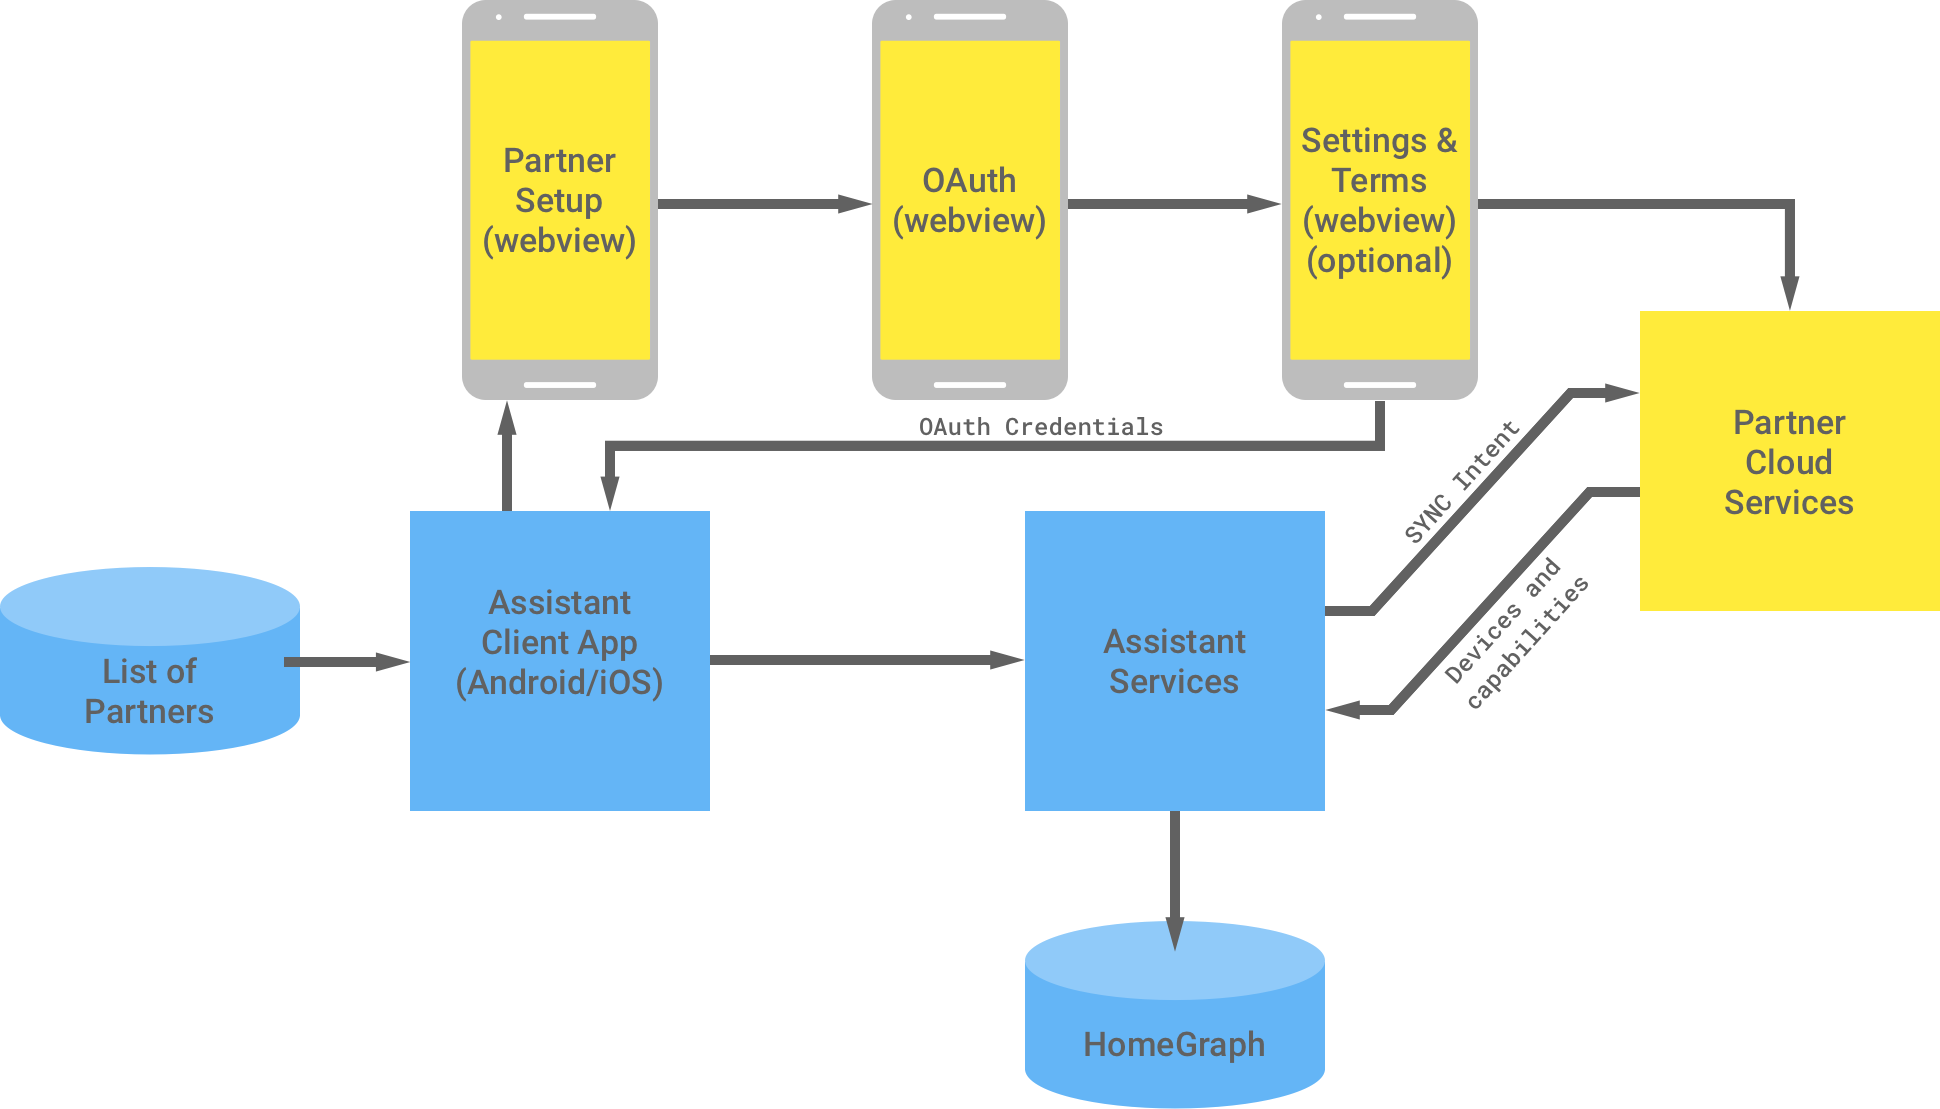 Ten rysunek pokazuje interakcję między infrastrukturą Google a infrastrukturą partnera. W infrastrukturze Google znajduje się lista partnerów dostępna dla aplikacji klienckiej Asystenta, która jest następnie przekazywana do infrastruktury partnera w celu przeprowadzenia uwierzytelniania OAuth. Uwierzytelnianie OAuth po stronie partnera obejmuje konfigurację WebView partnera, komponent OAuth WebView, opcjonalne ustawienia i warunki korzystania z usług oraz usługi w chmurze partnera. infrastruktura partnera, a następnie zwraca dane logowania OAuth do aplikacji klienckiej Asystenta. Usługi w chmurze partnera wysyłają dostępne urządzenia i funkcje do usług Asystenta, które następnie zapisują te informacje w Home Graph.